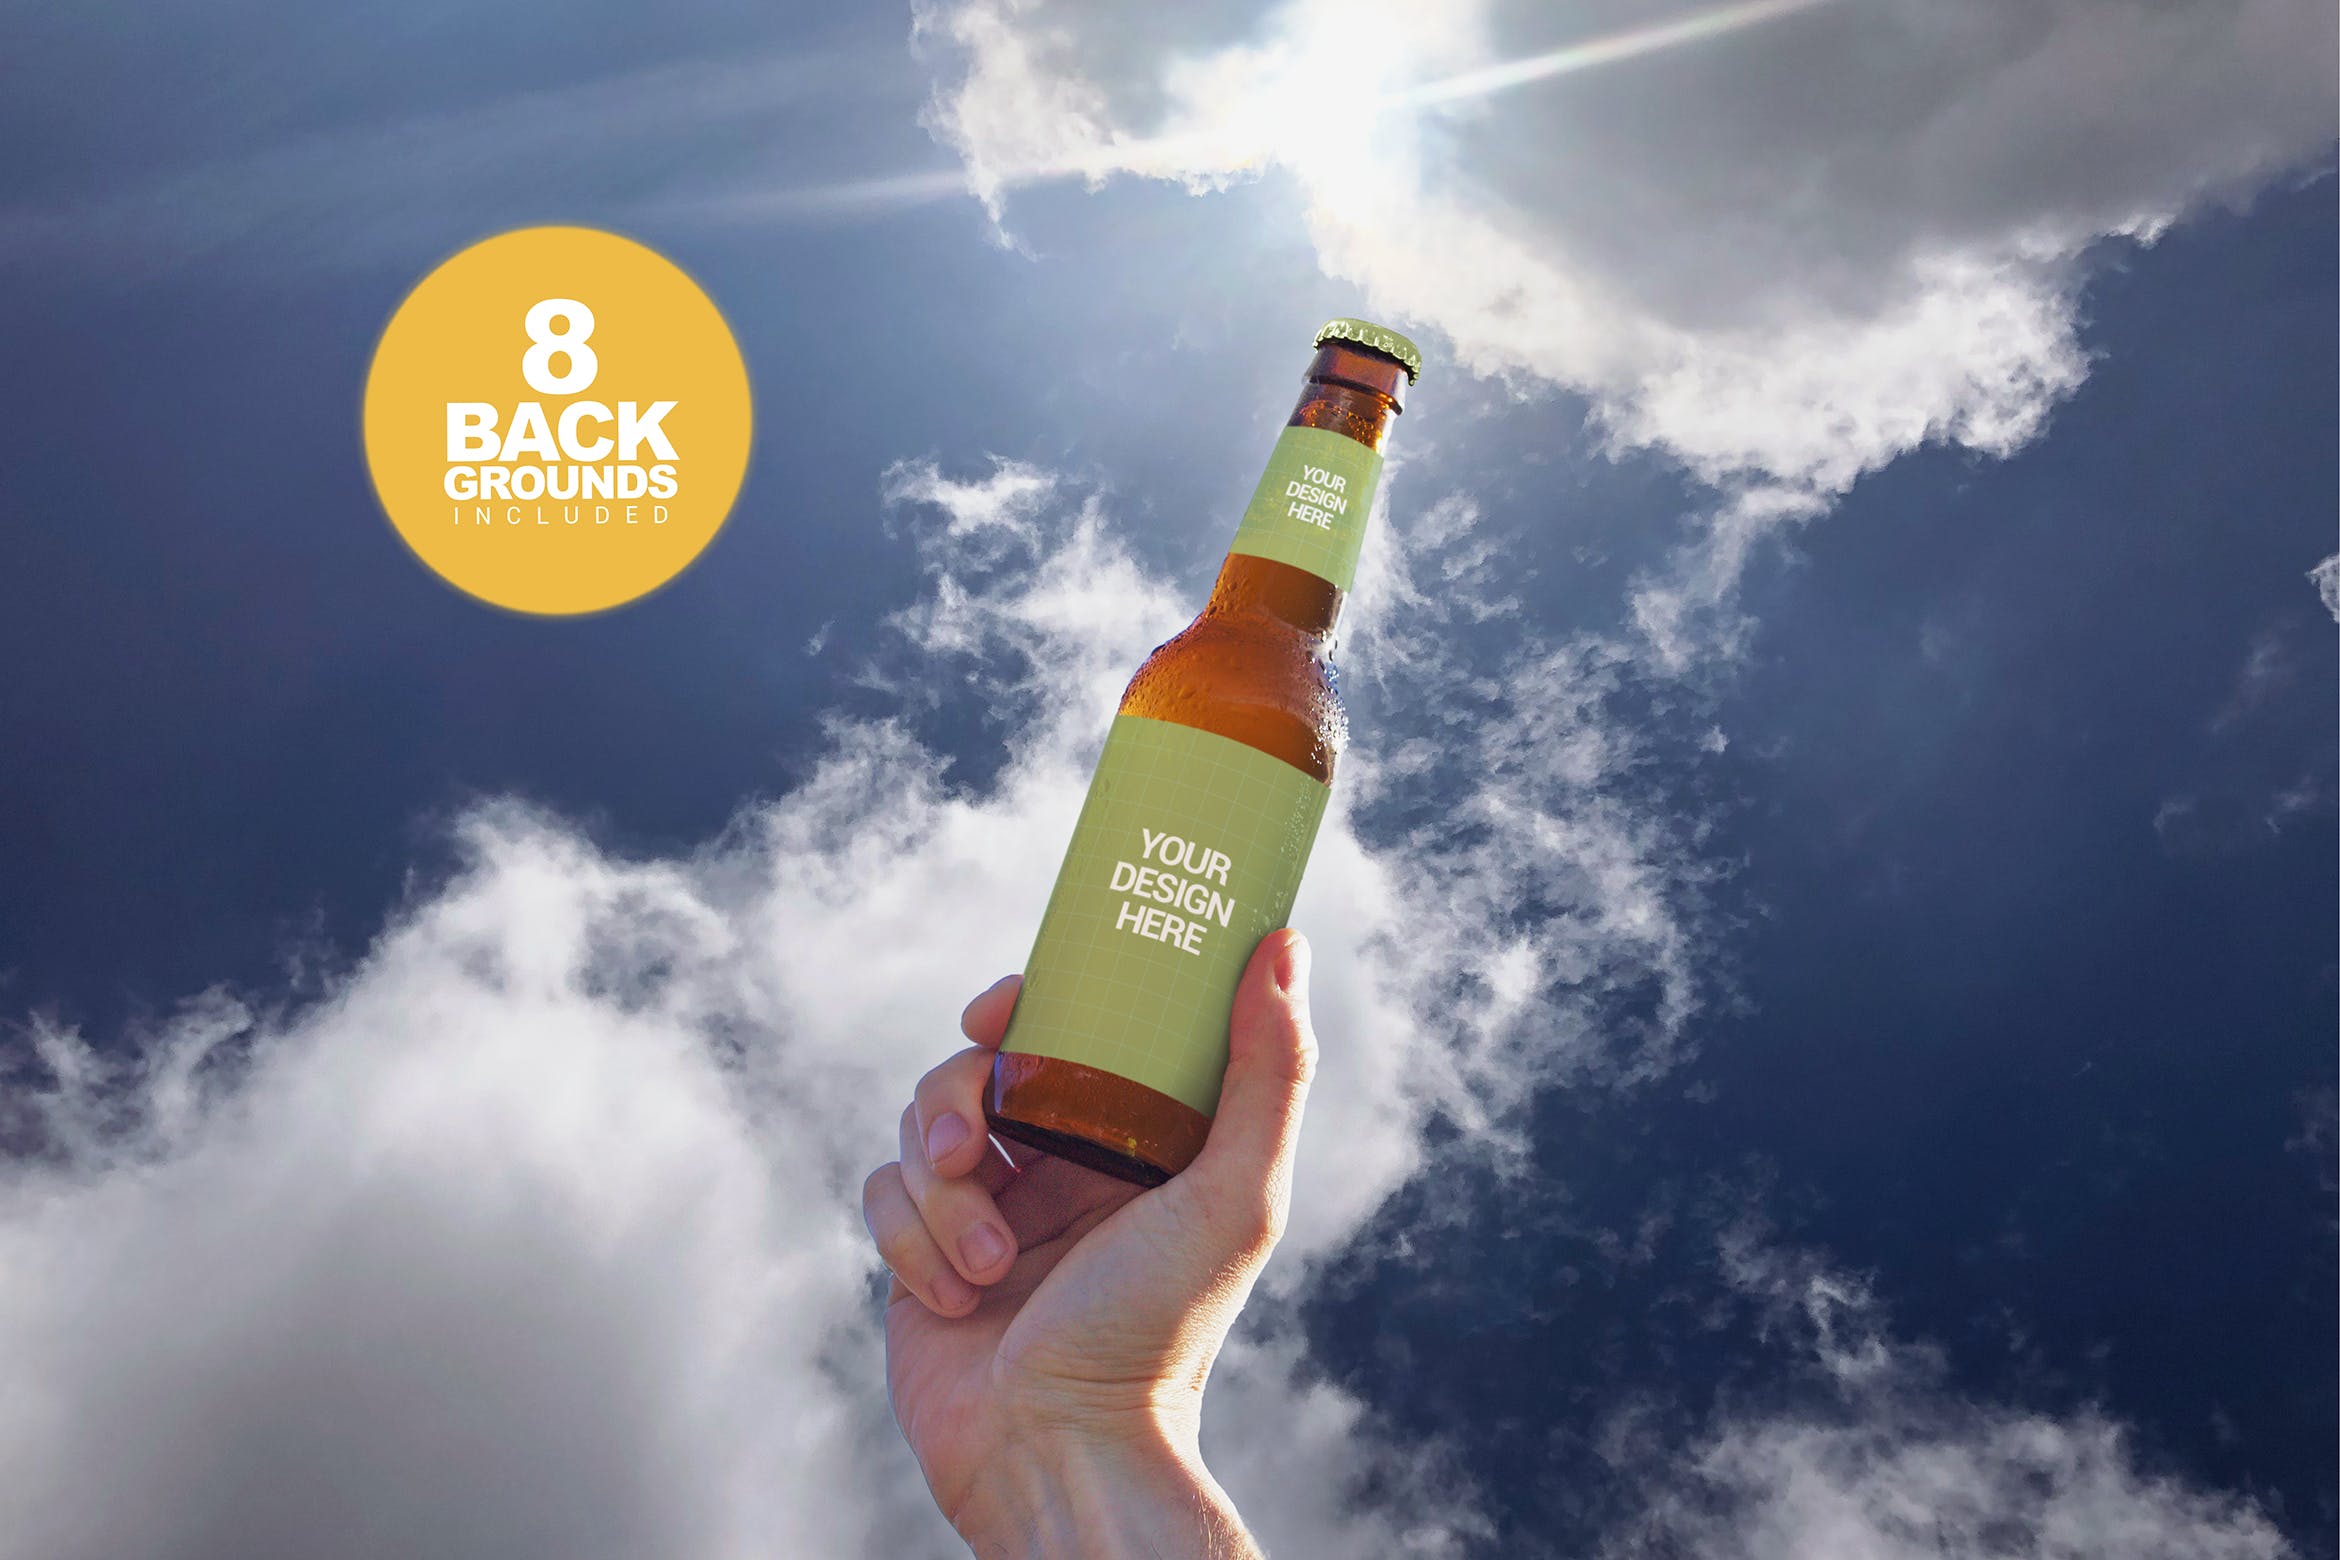 天空背景啤酒瓶外观设计图第一素材精选 Sky Backgrounds Beer Mockup插图